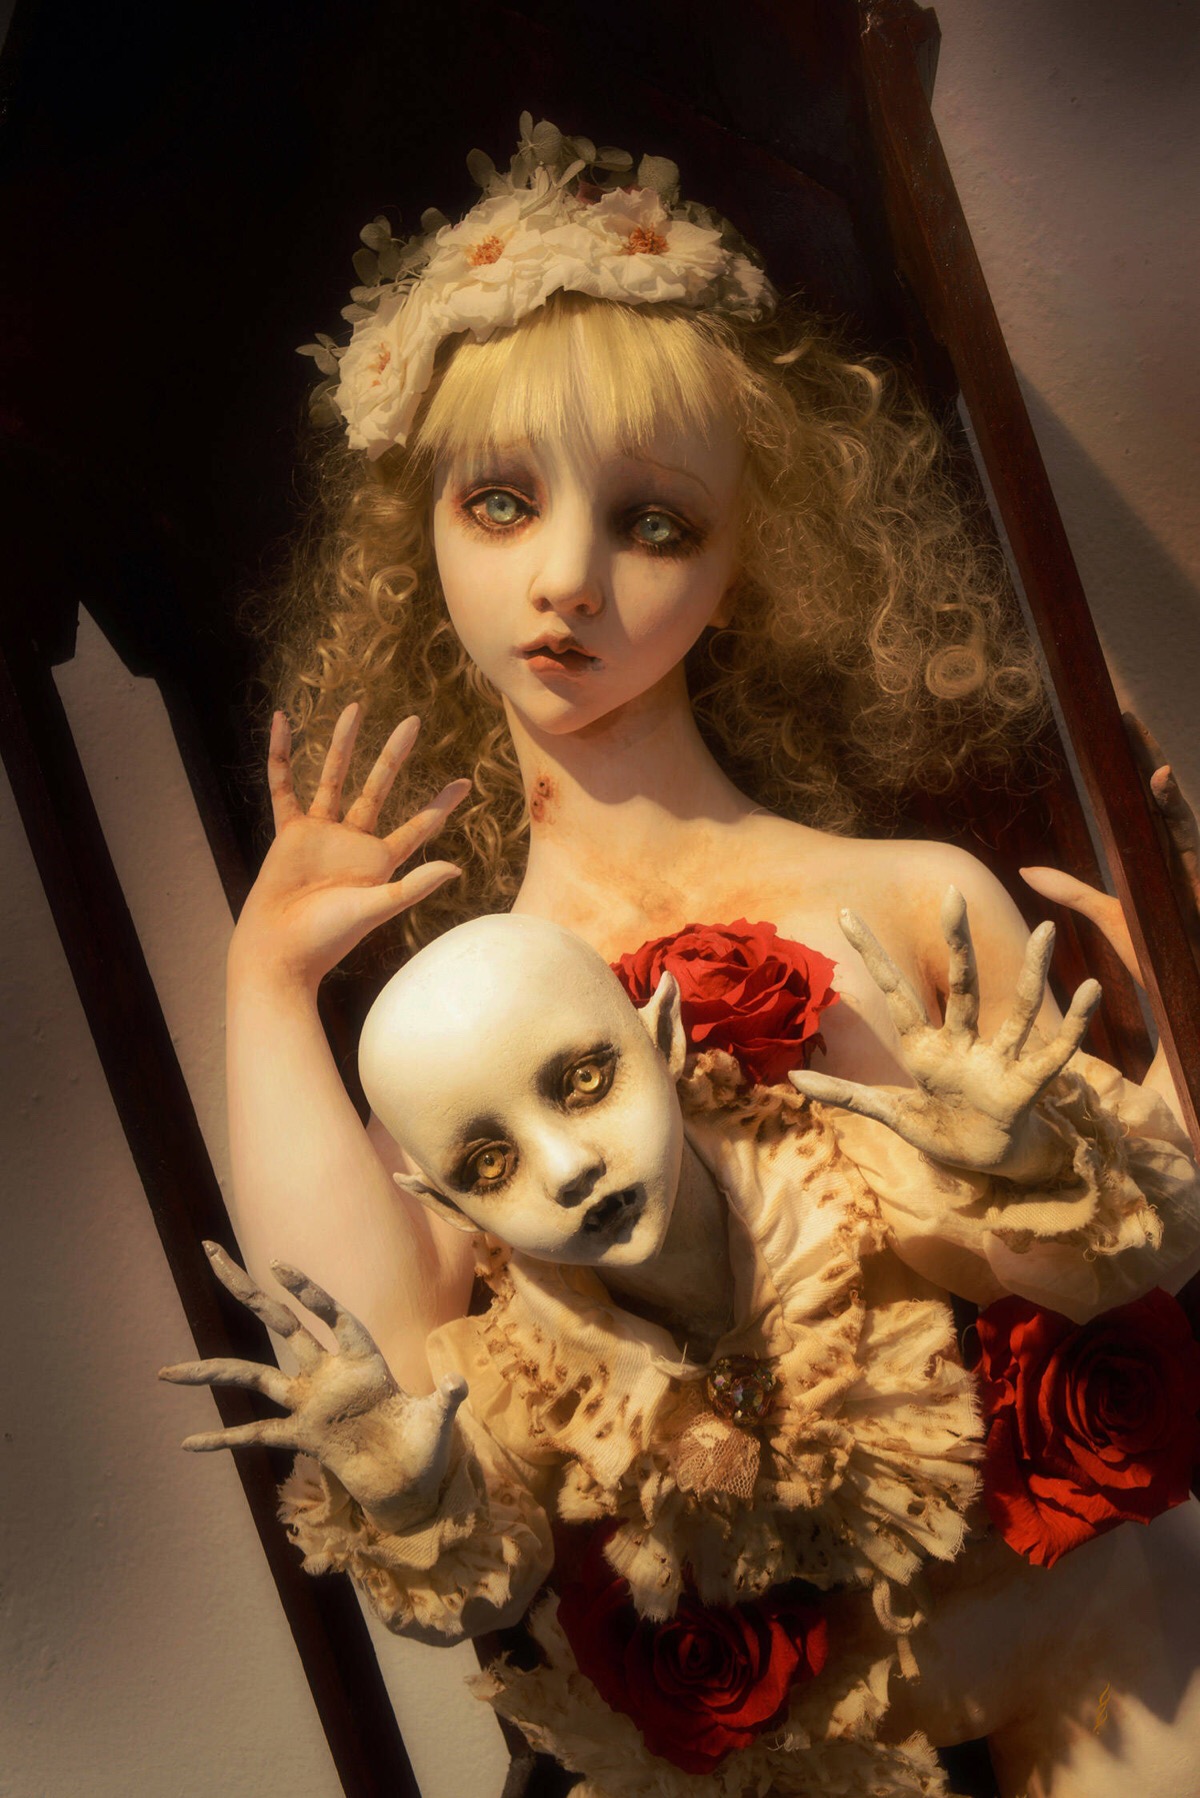 「日本人形艺术家--清水真理」每个娃娃都是独一无二而散发着阴郁恐怖